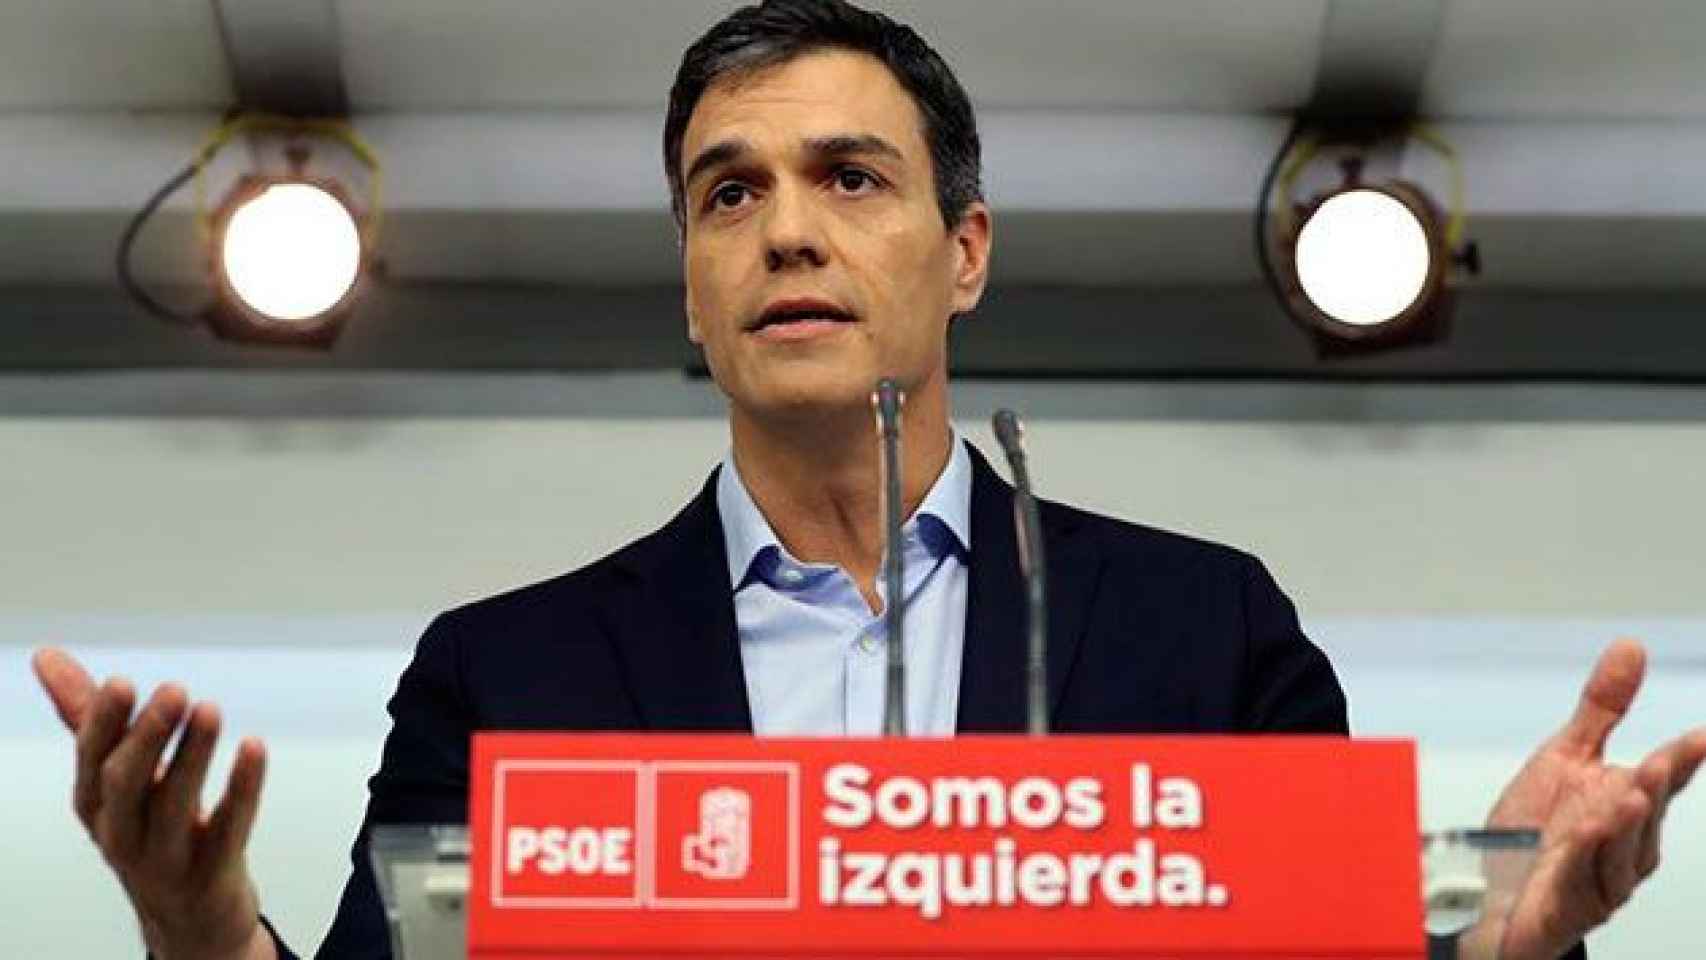 Sánchez reitera su apoyo a Rajoy frente al referéndum pero le pide también soluciones políticas